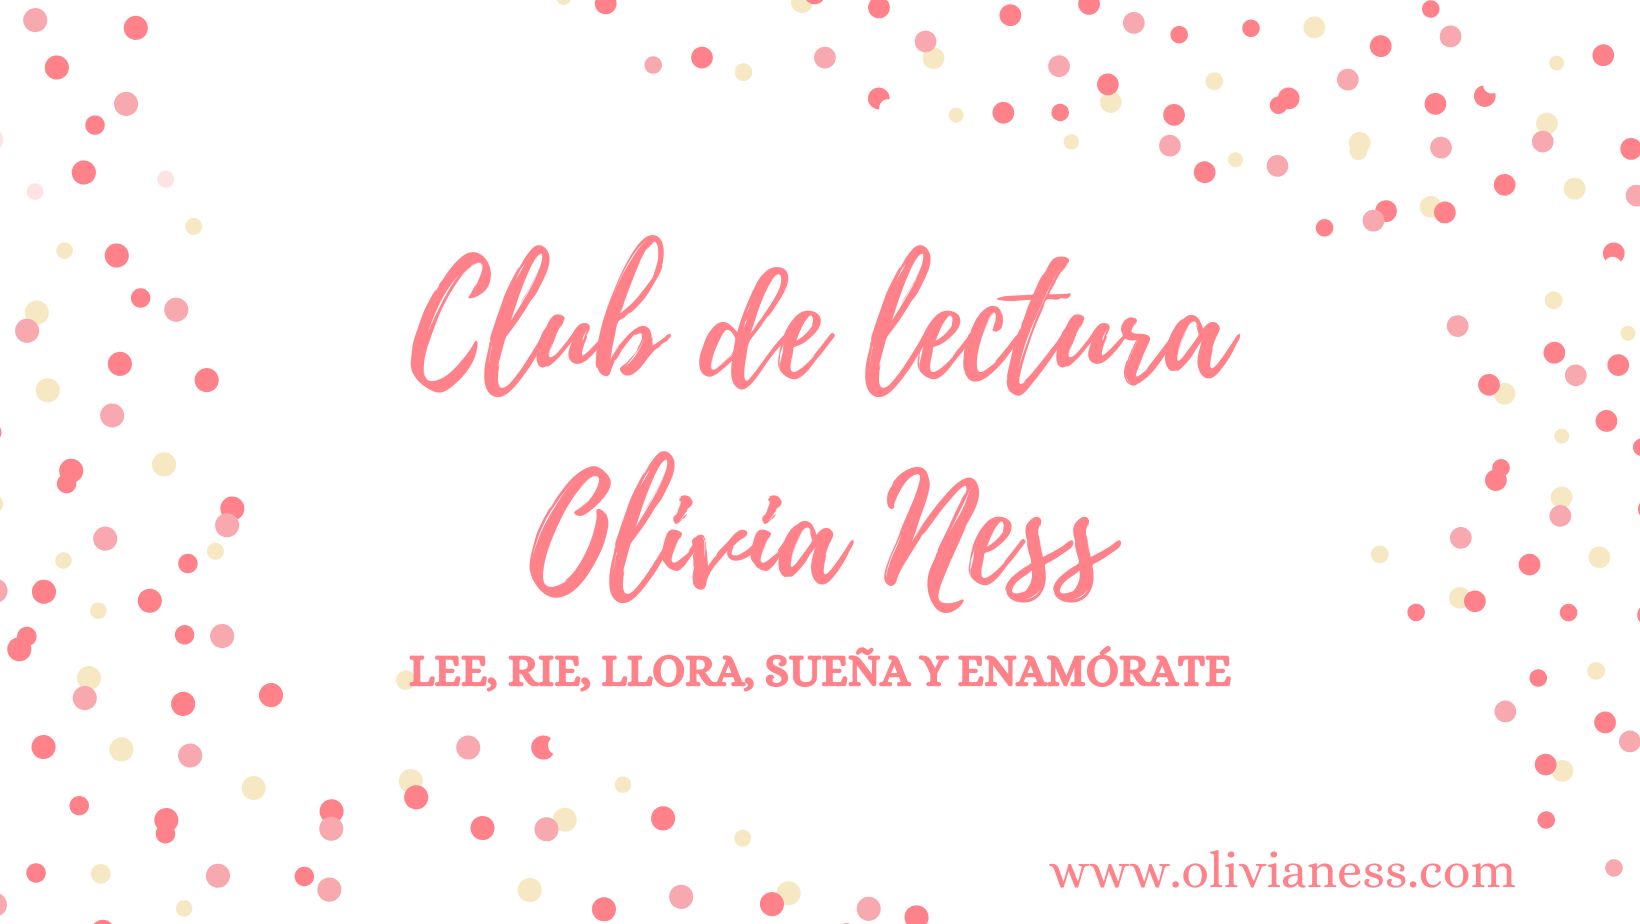 Club de Lectura de Olivia Ness